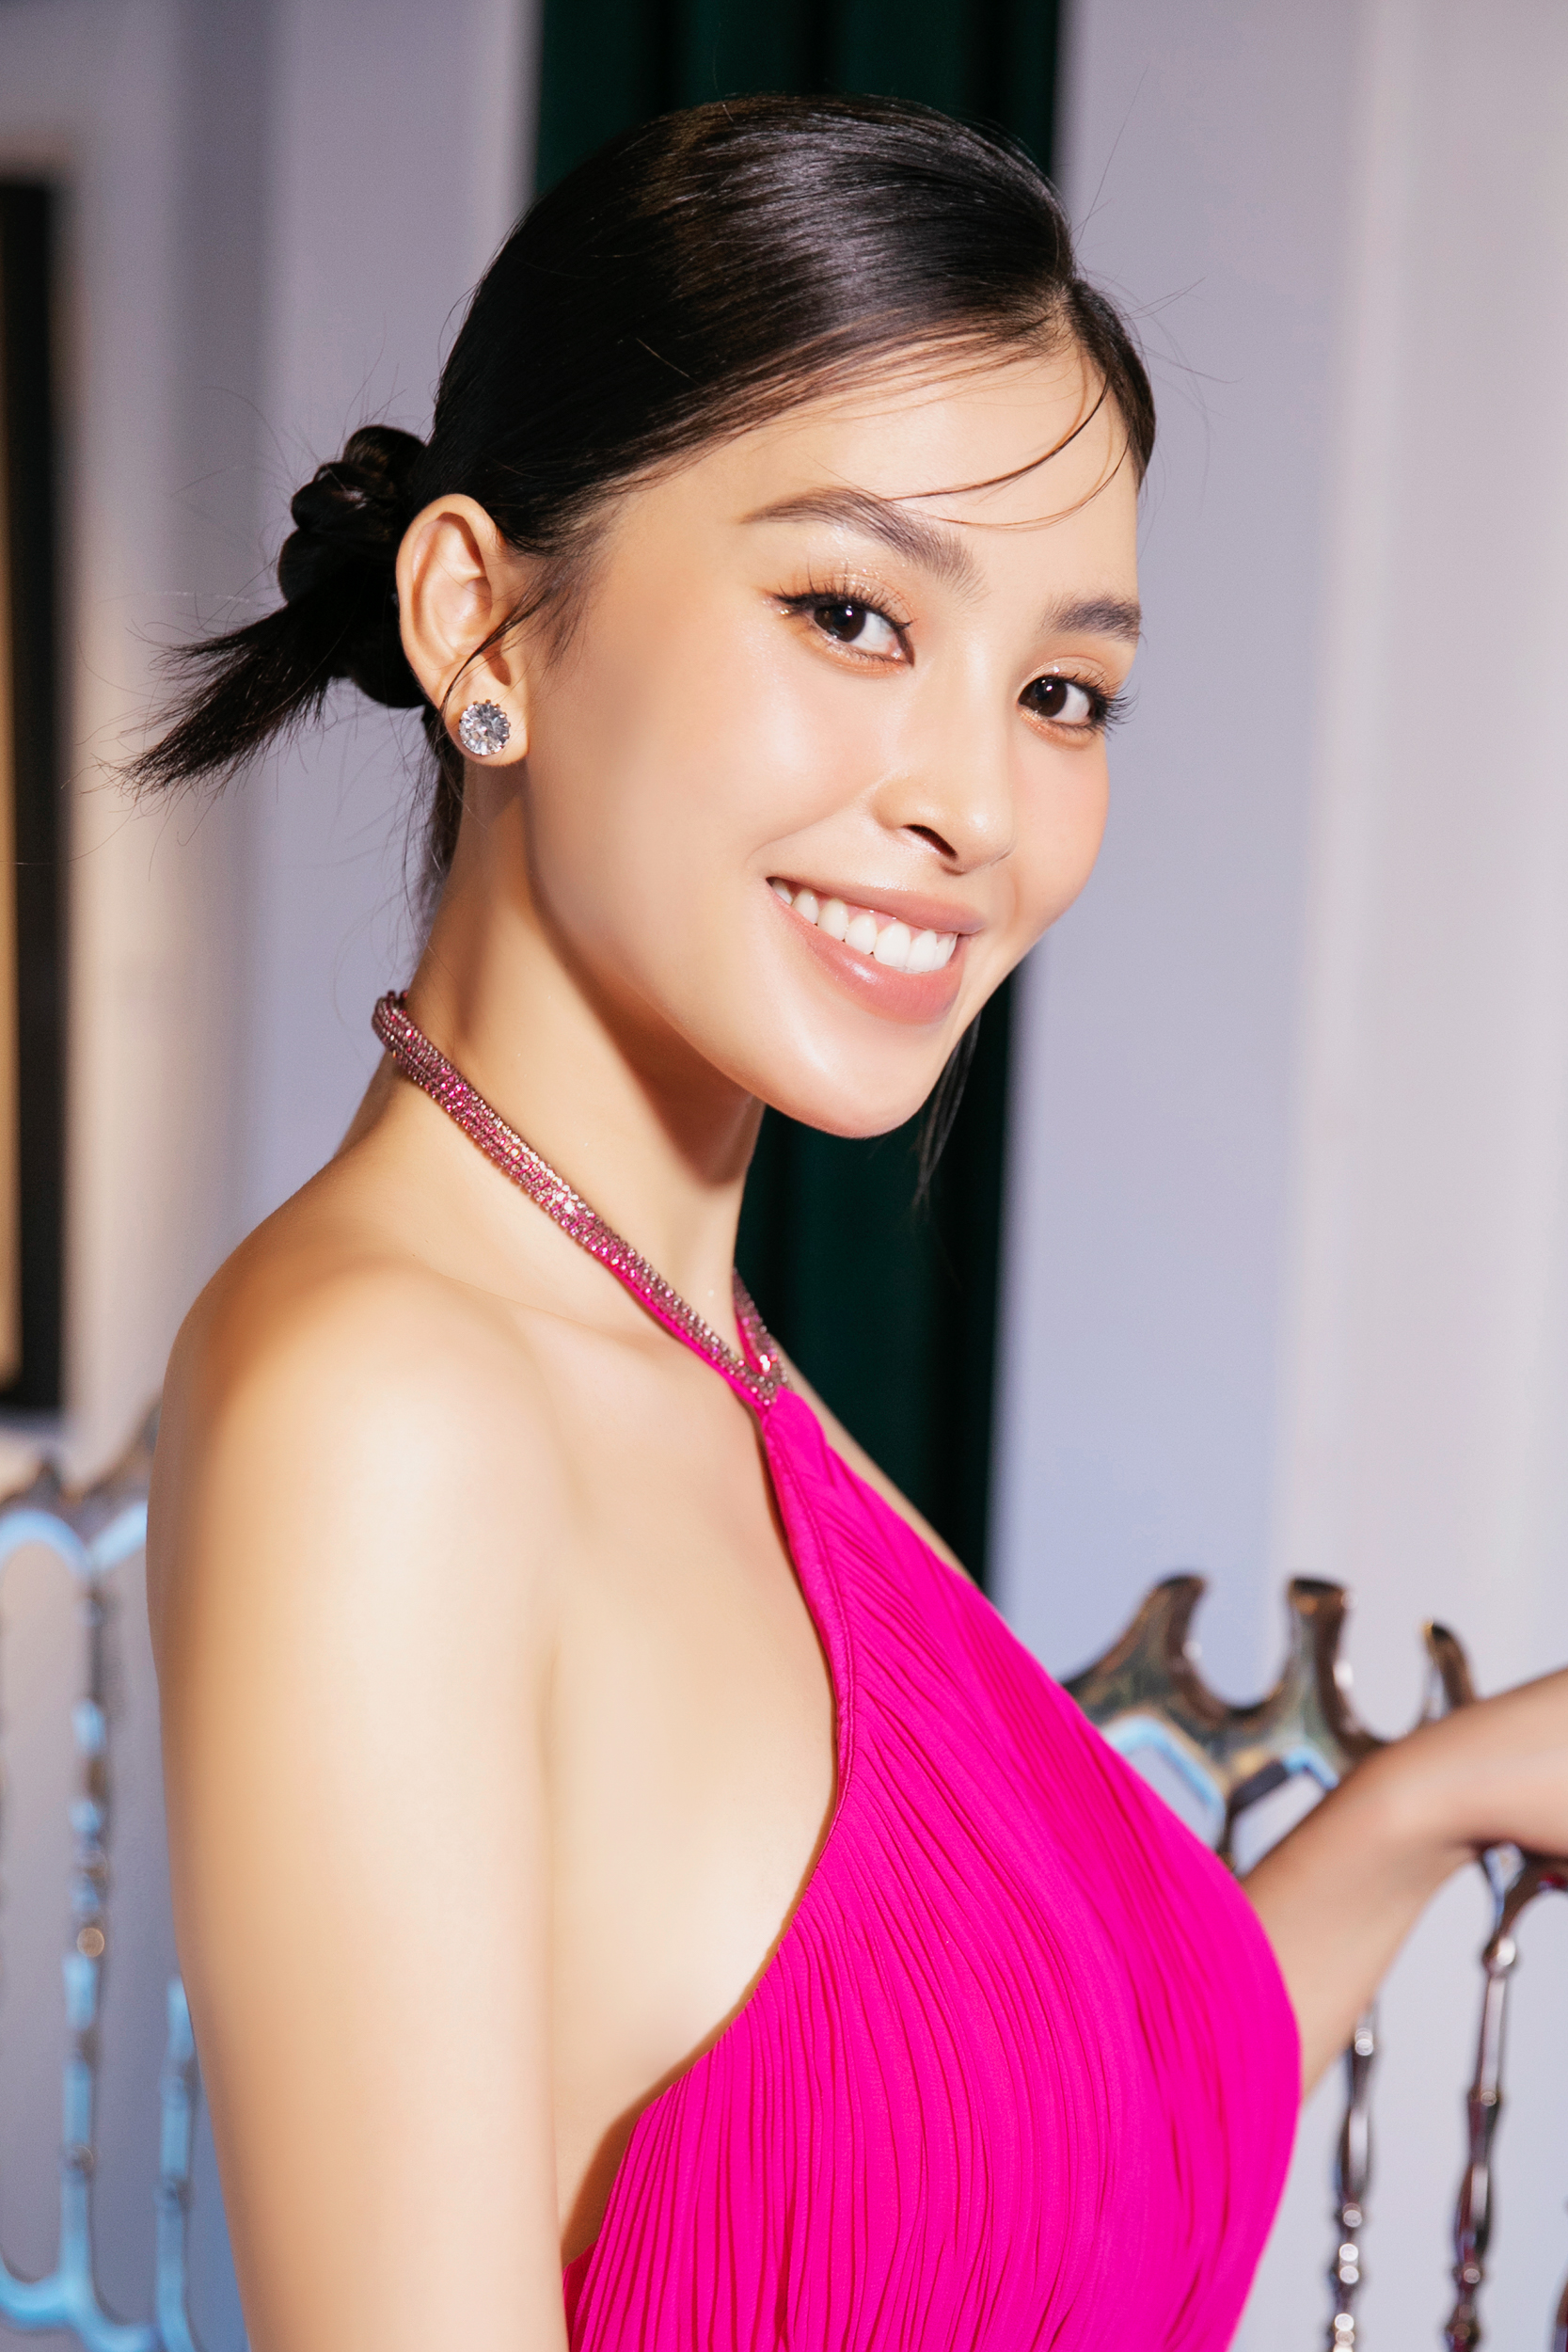 Tiểu Vy gợi cảm với váy hở lưng, xác nhận làm giám khảo Miss World Vietnam 2023  - Ảnh 1.